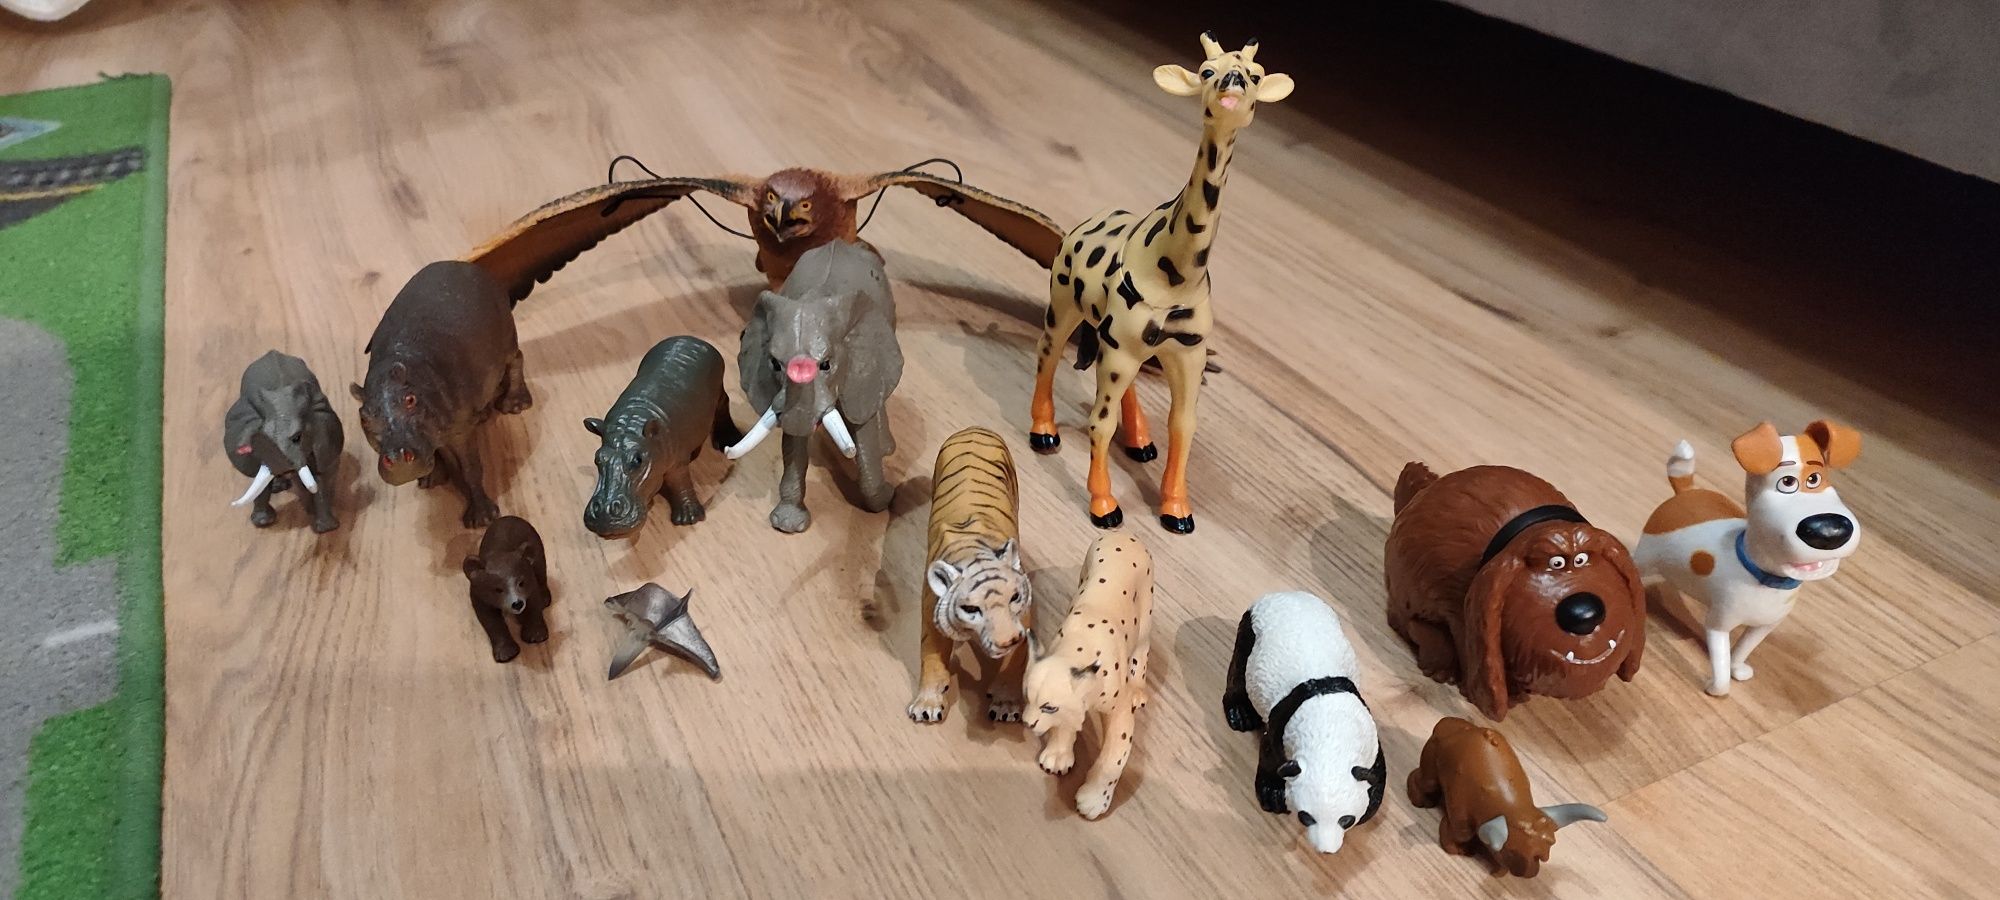 Figurki zwierzęta afrykańskie i inne